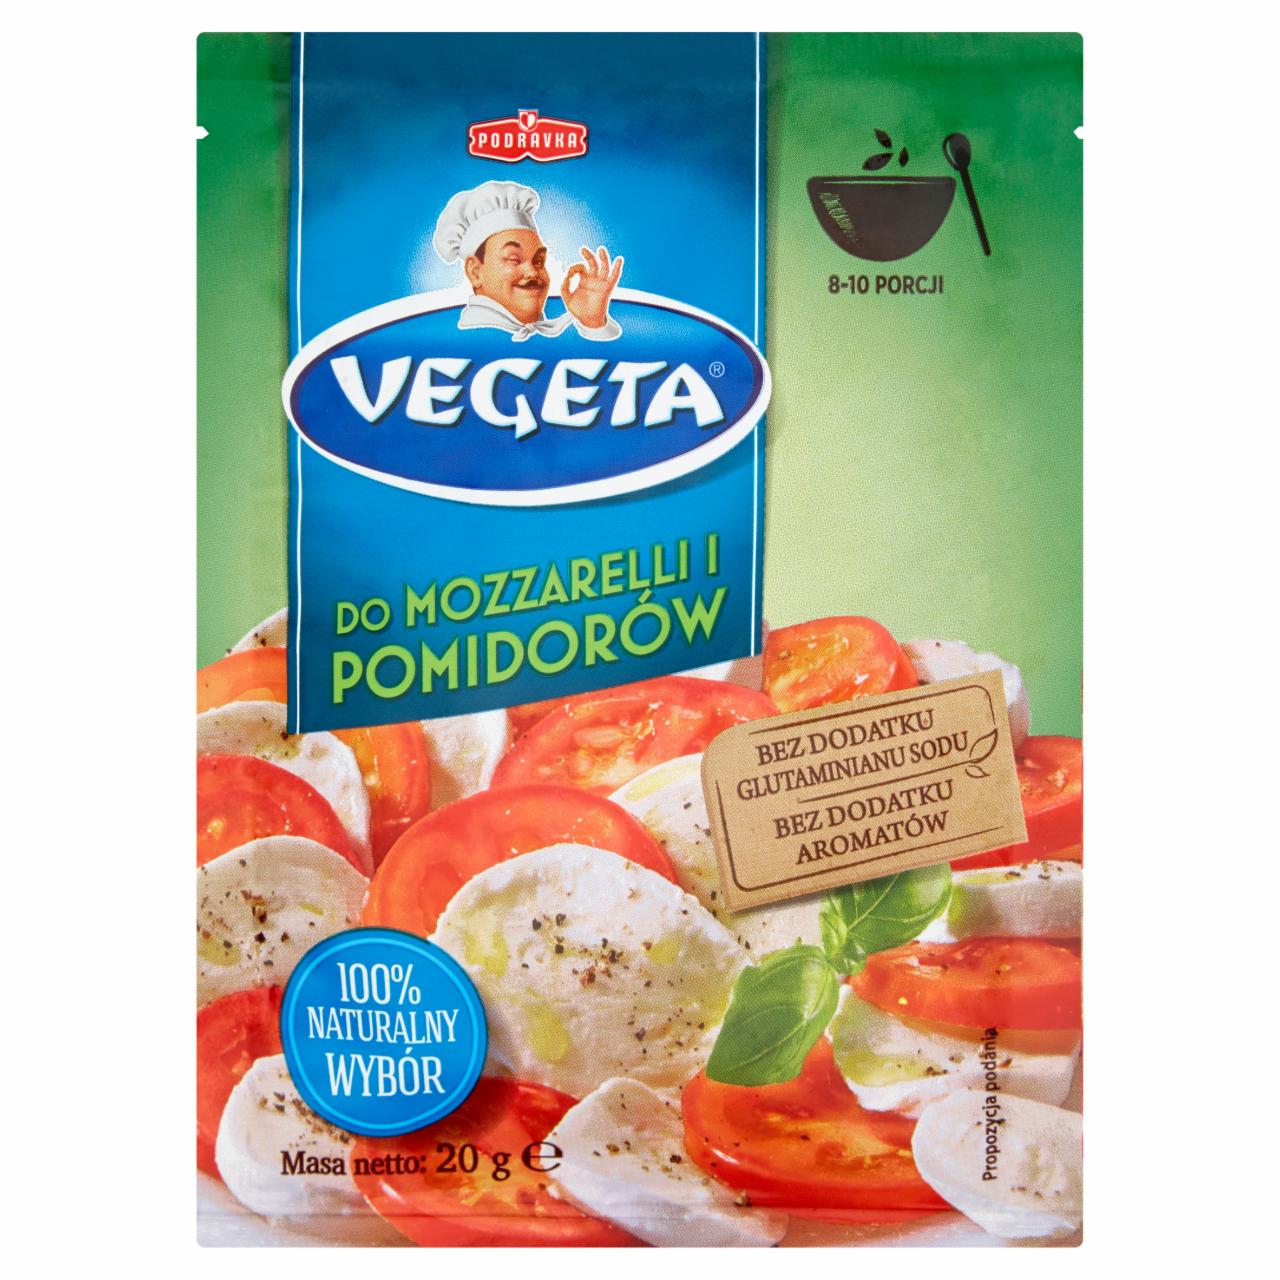 Zdjęcia - Vegeta Do mozzarelli i pomidorów Przyprawa 20 g